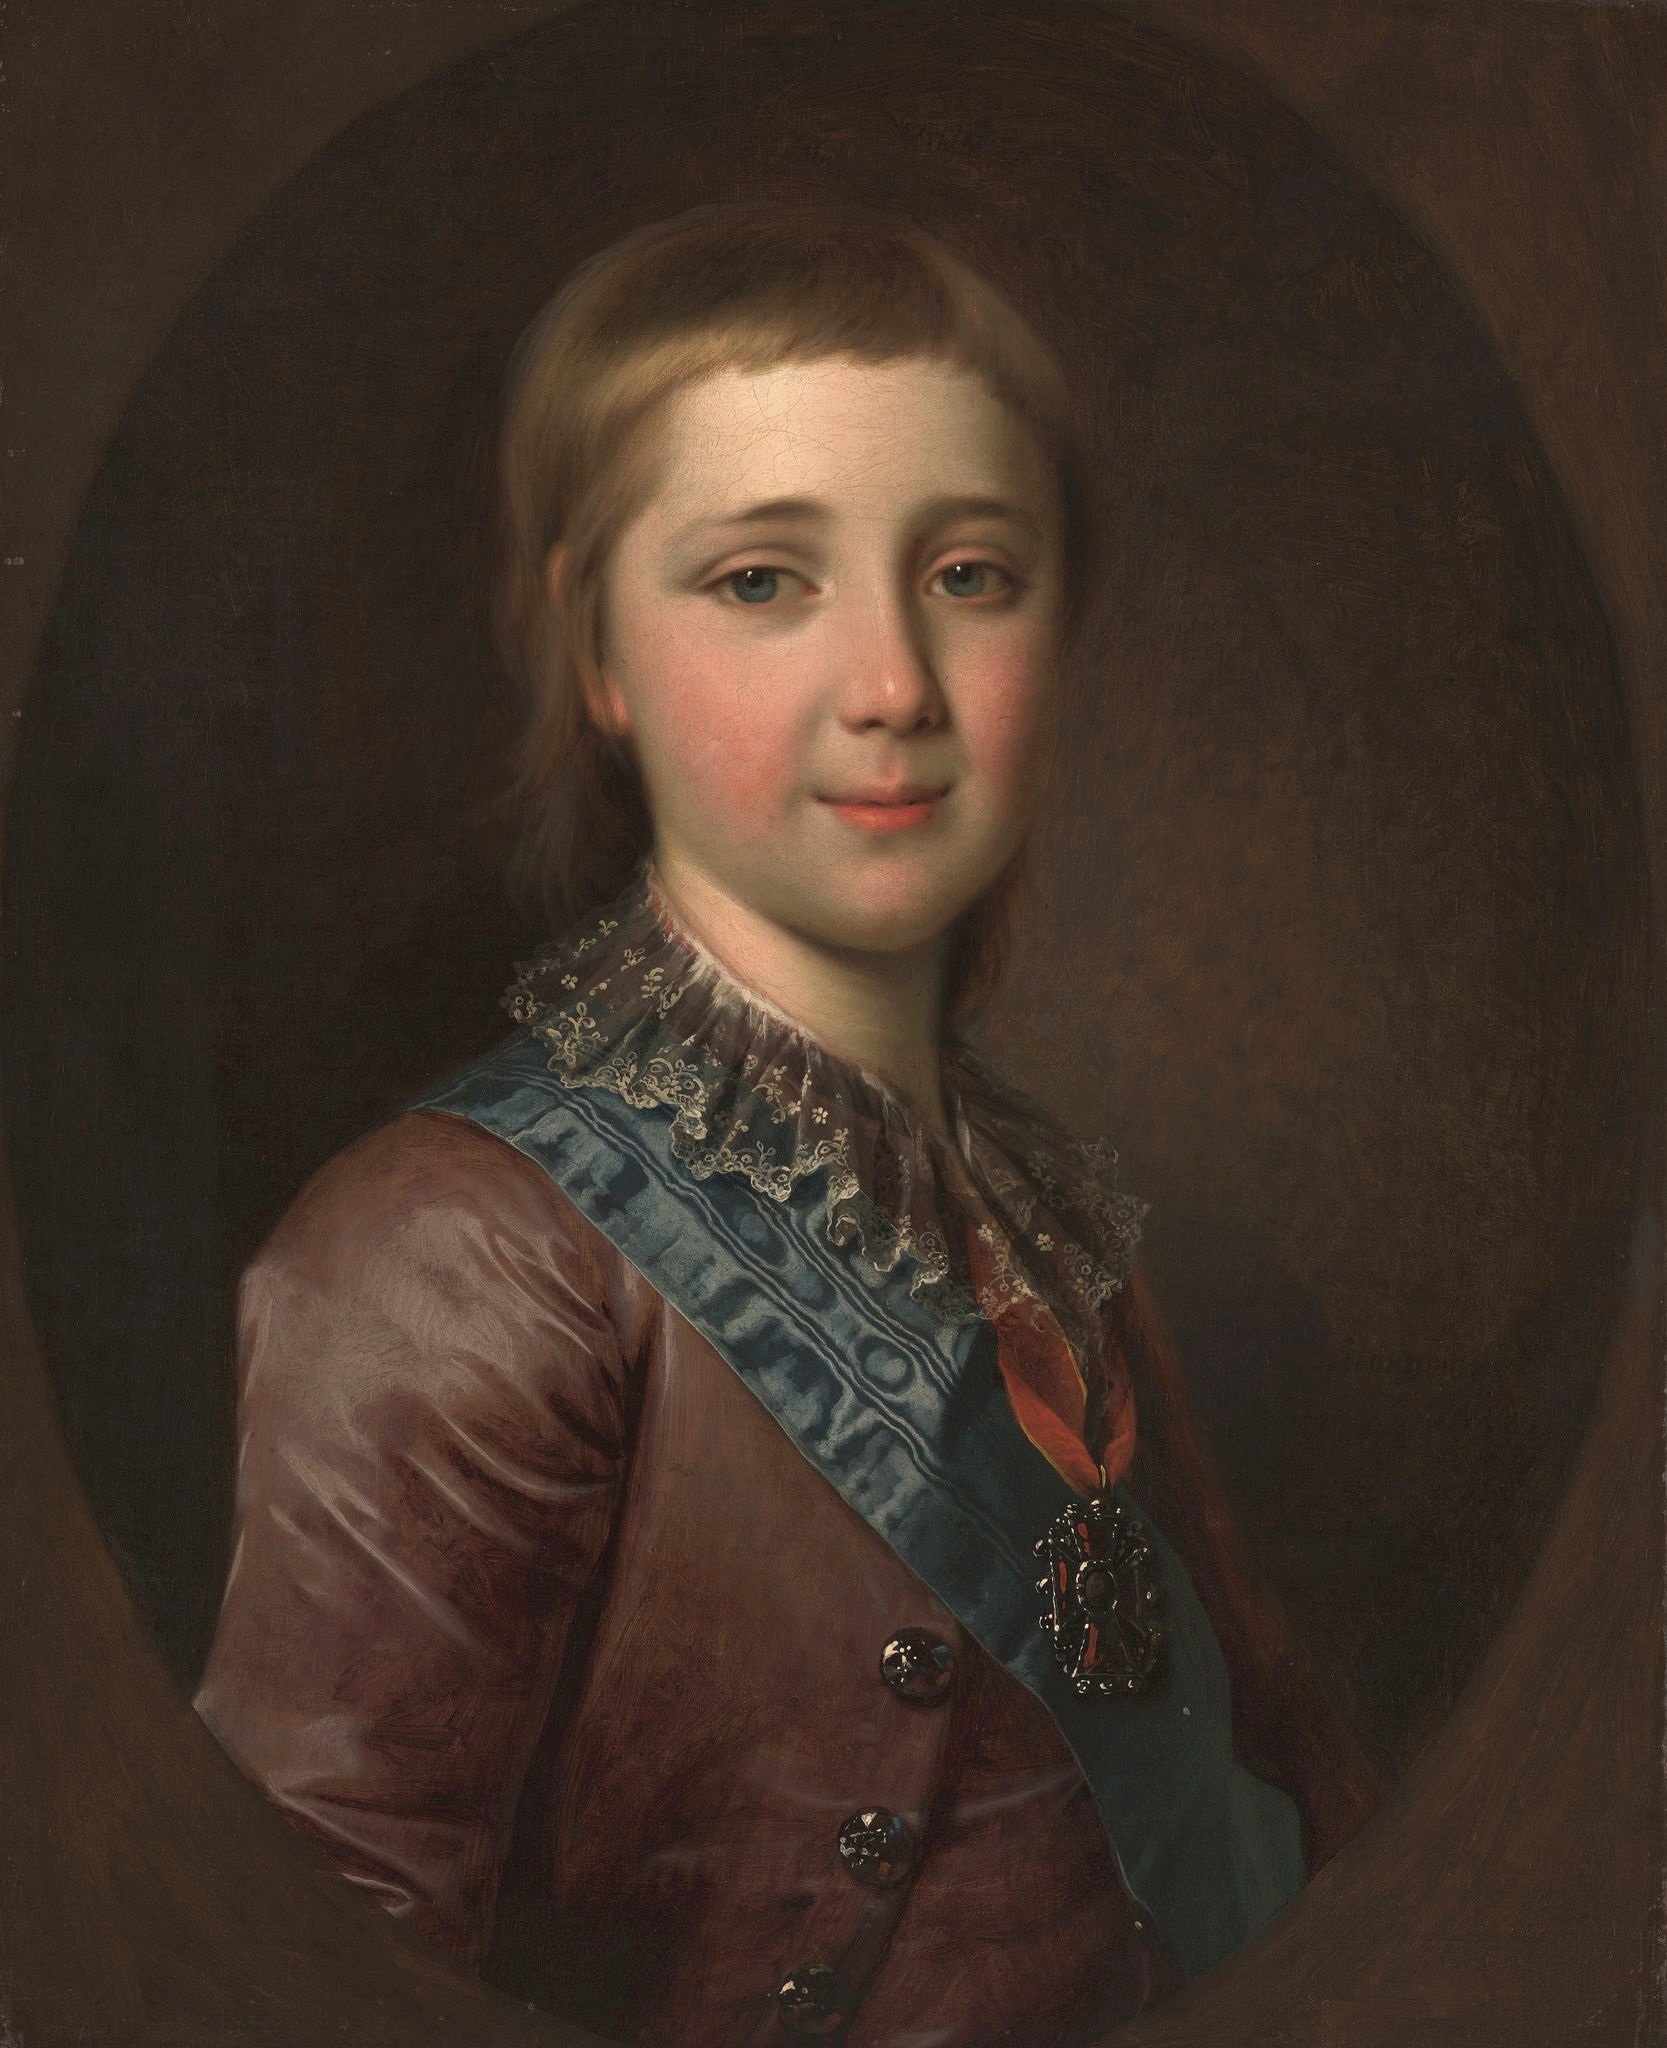 Левицкий Д.. Портрет великого князя Александра Павловича в детстве. 1787